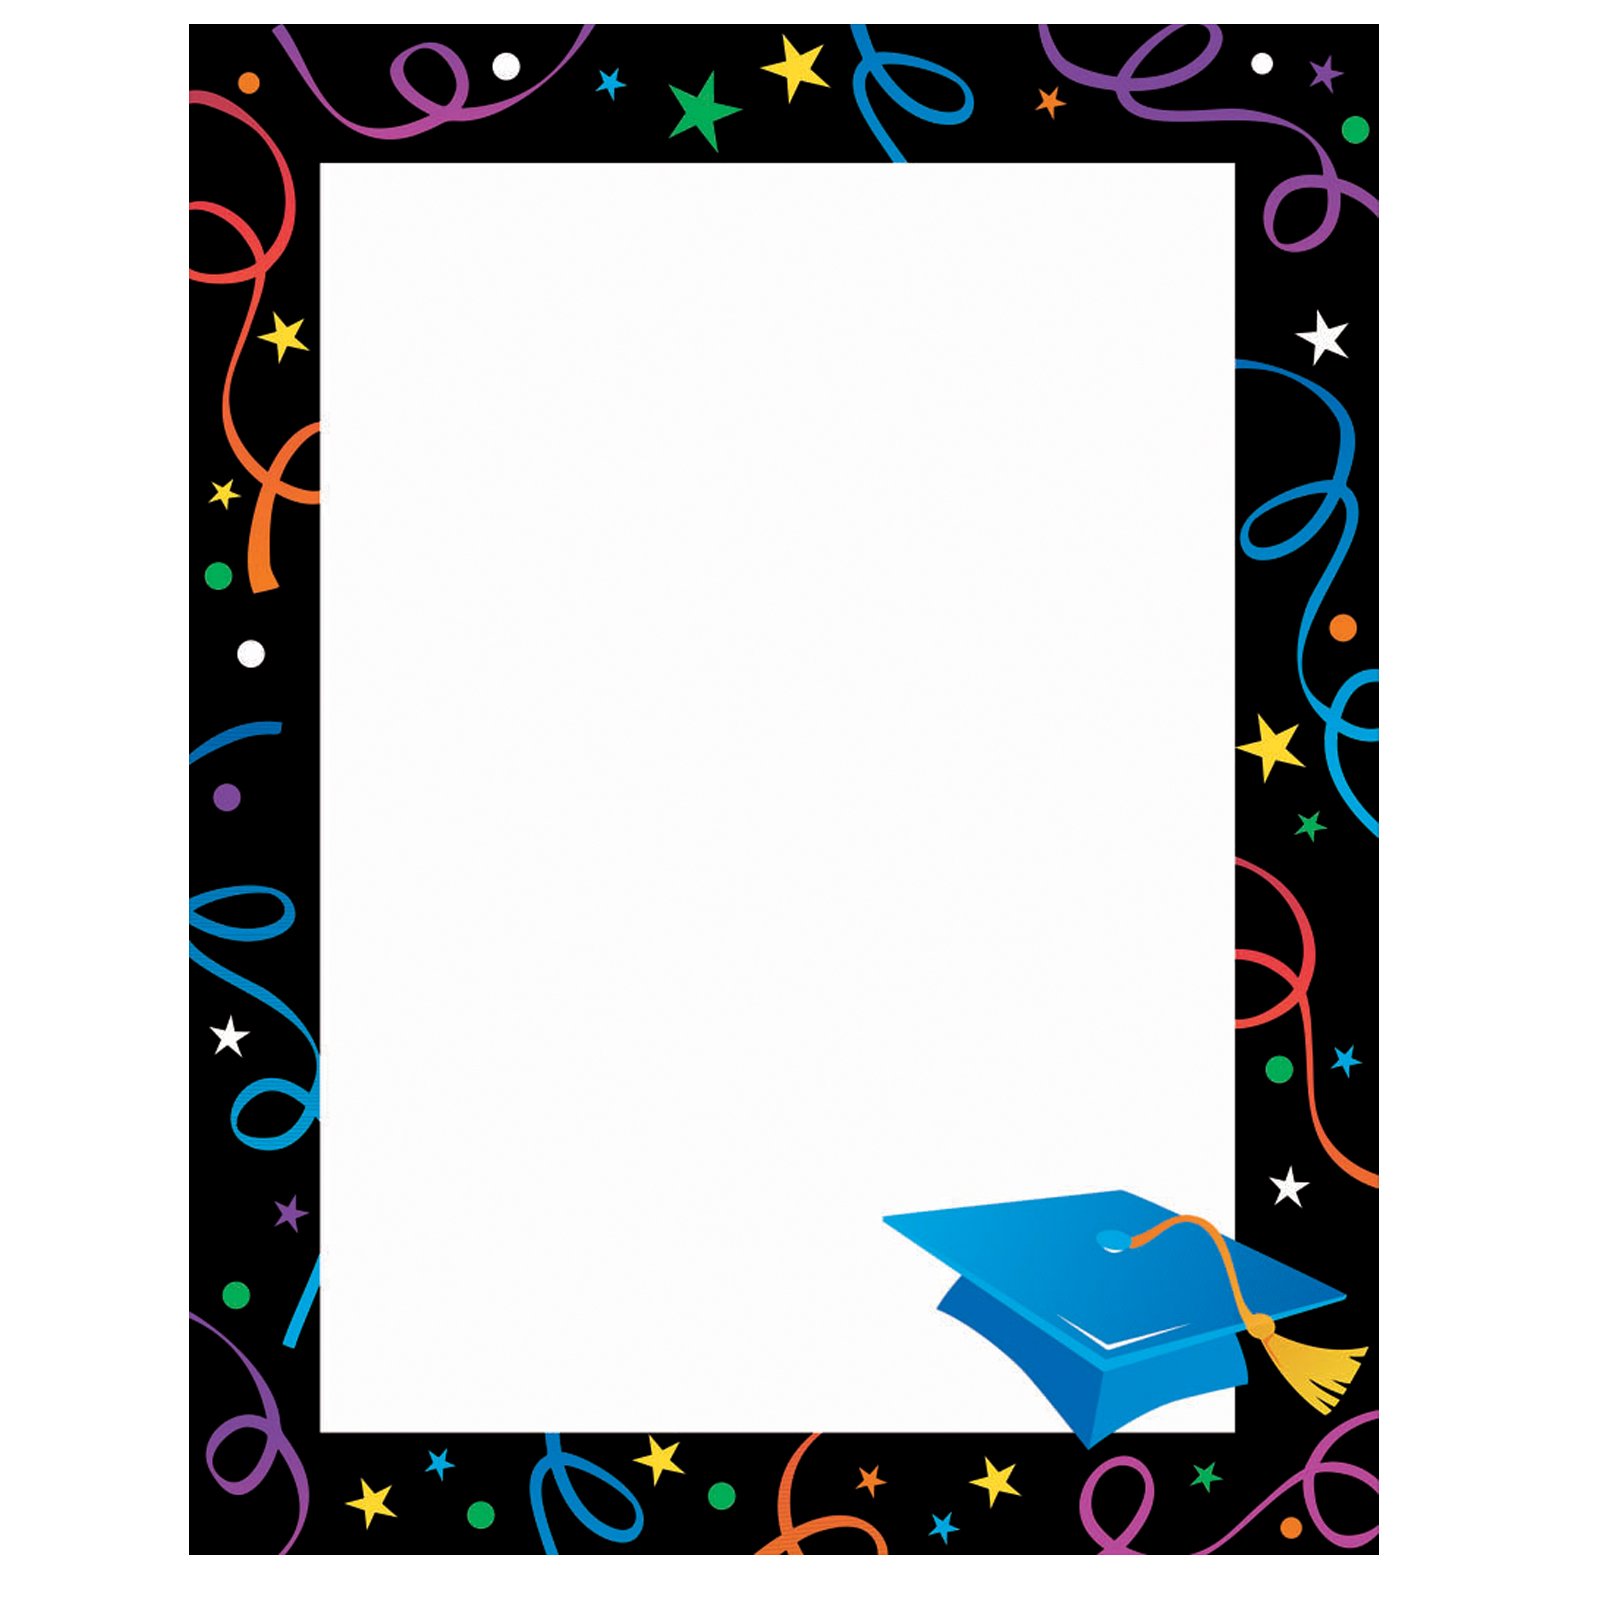 graduation clipart picture frame